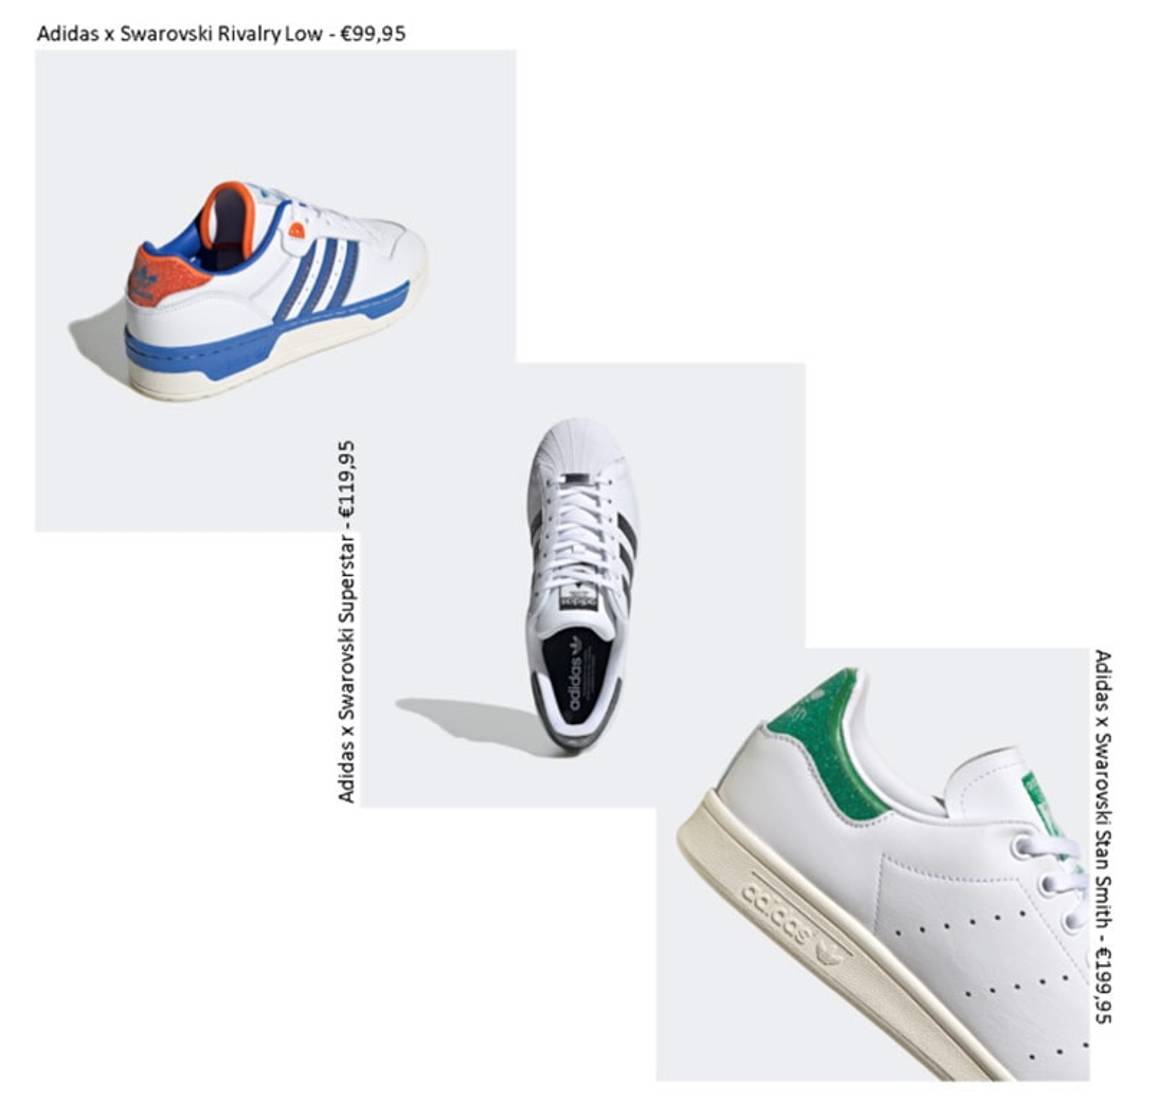 Swarovski revisite des modèles iconiques d’Adidas